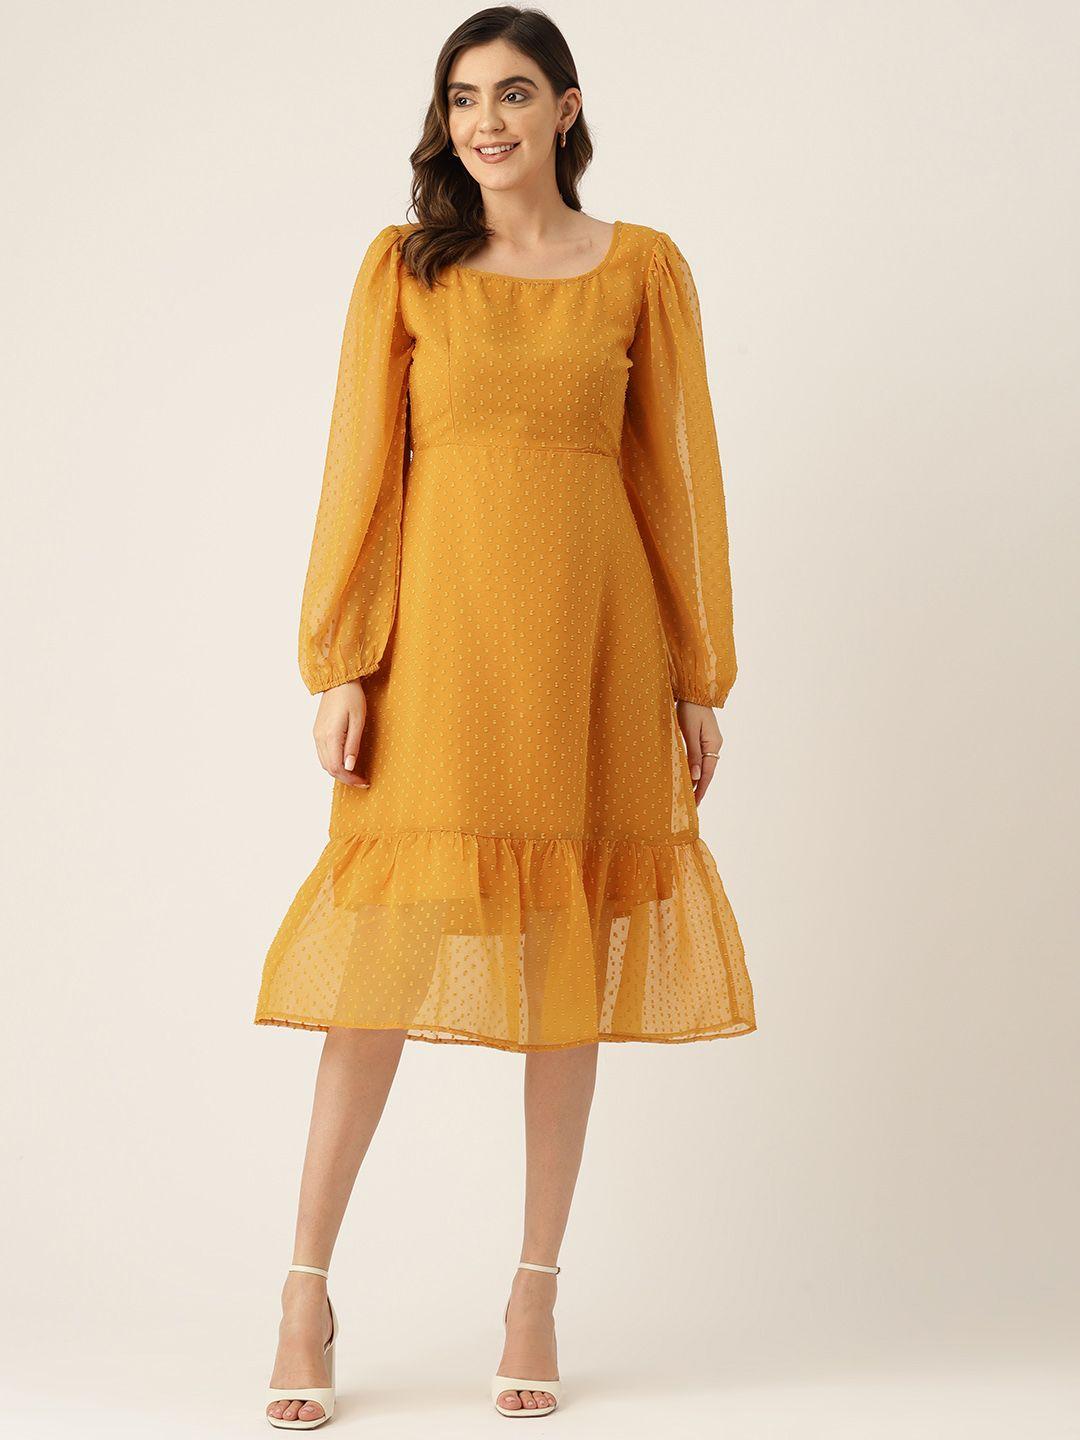 label-regalia-yellow-georgette-a-line-midi-dress